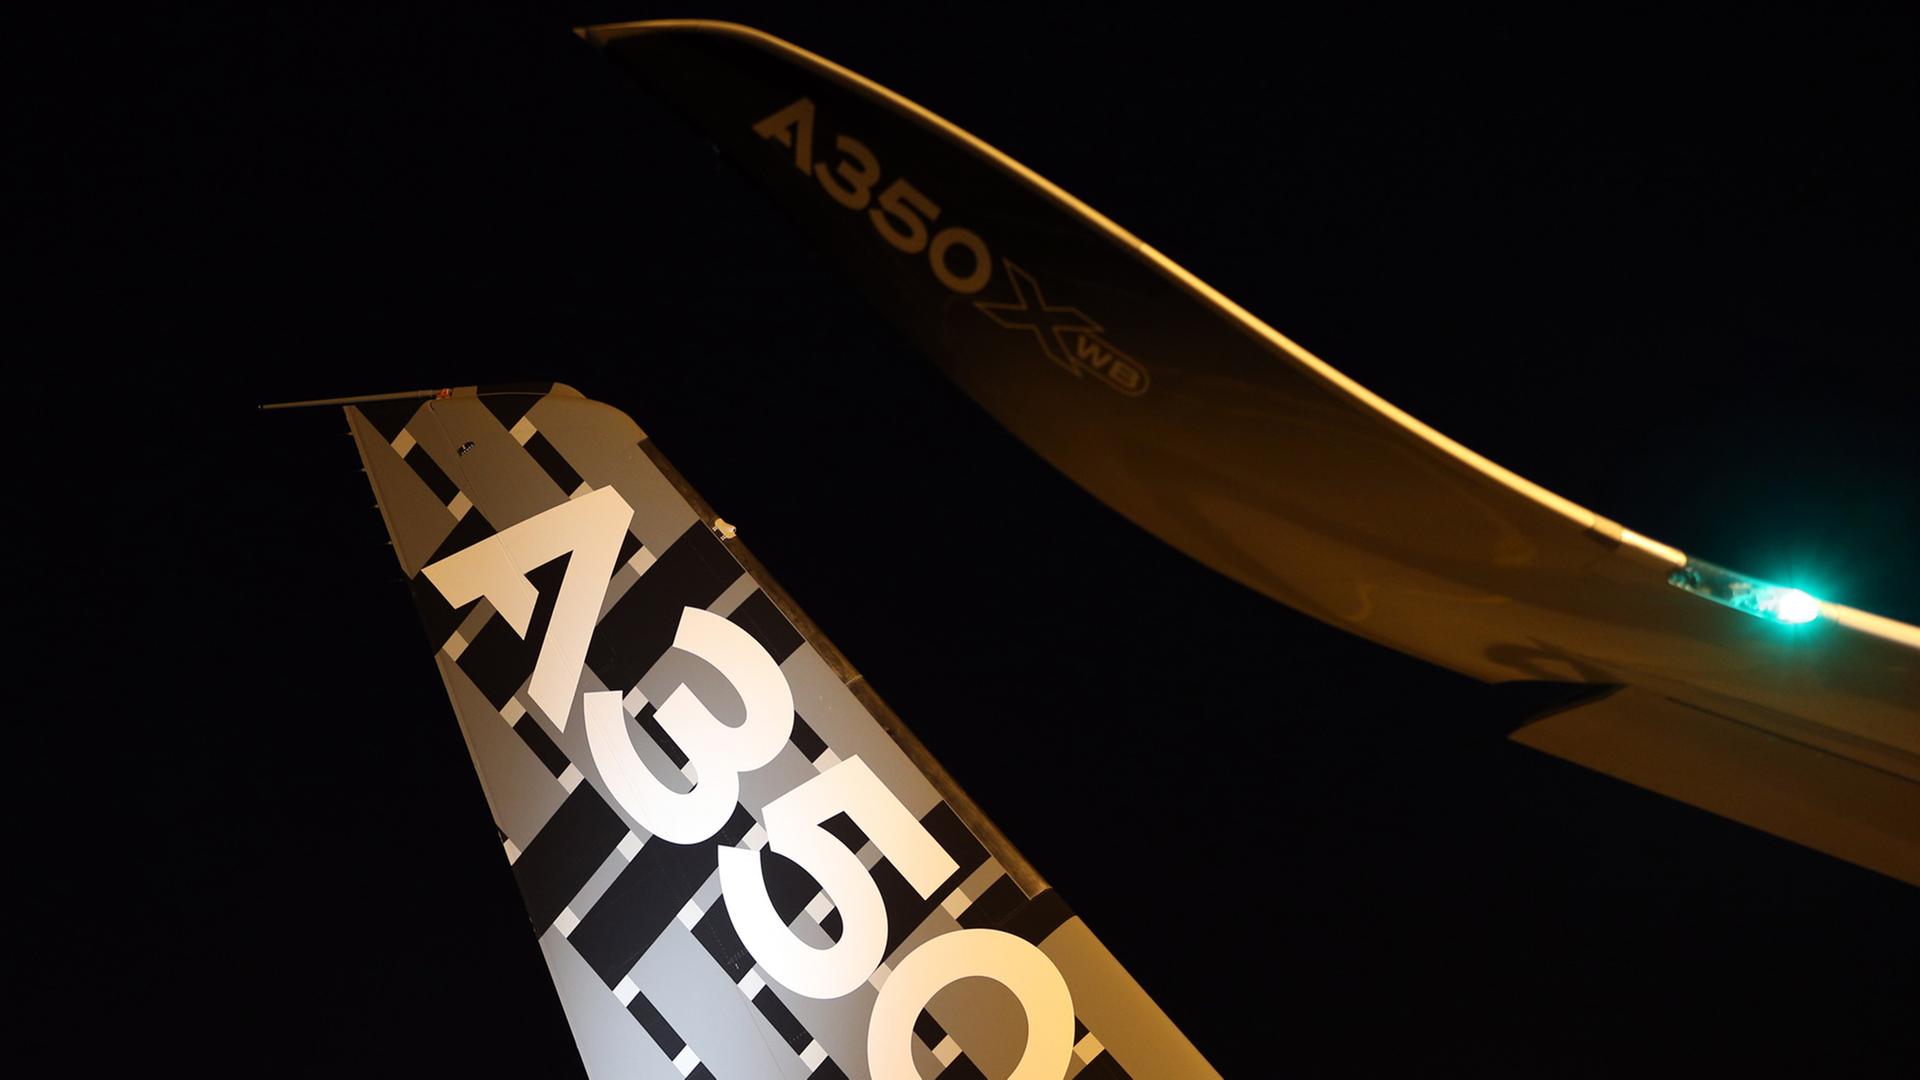 Ein Heckflügel des Airbus 350 im Abendlicht.